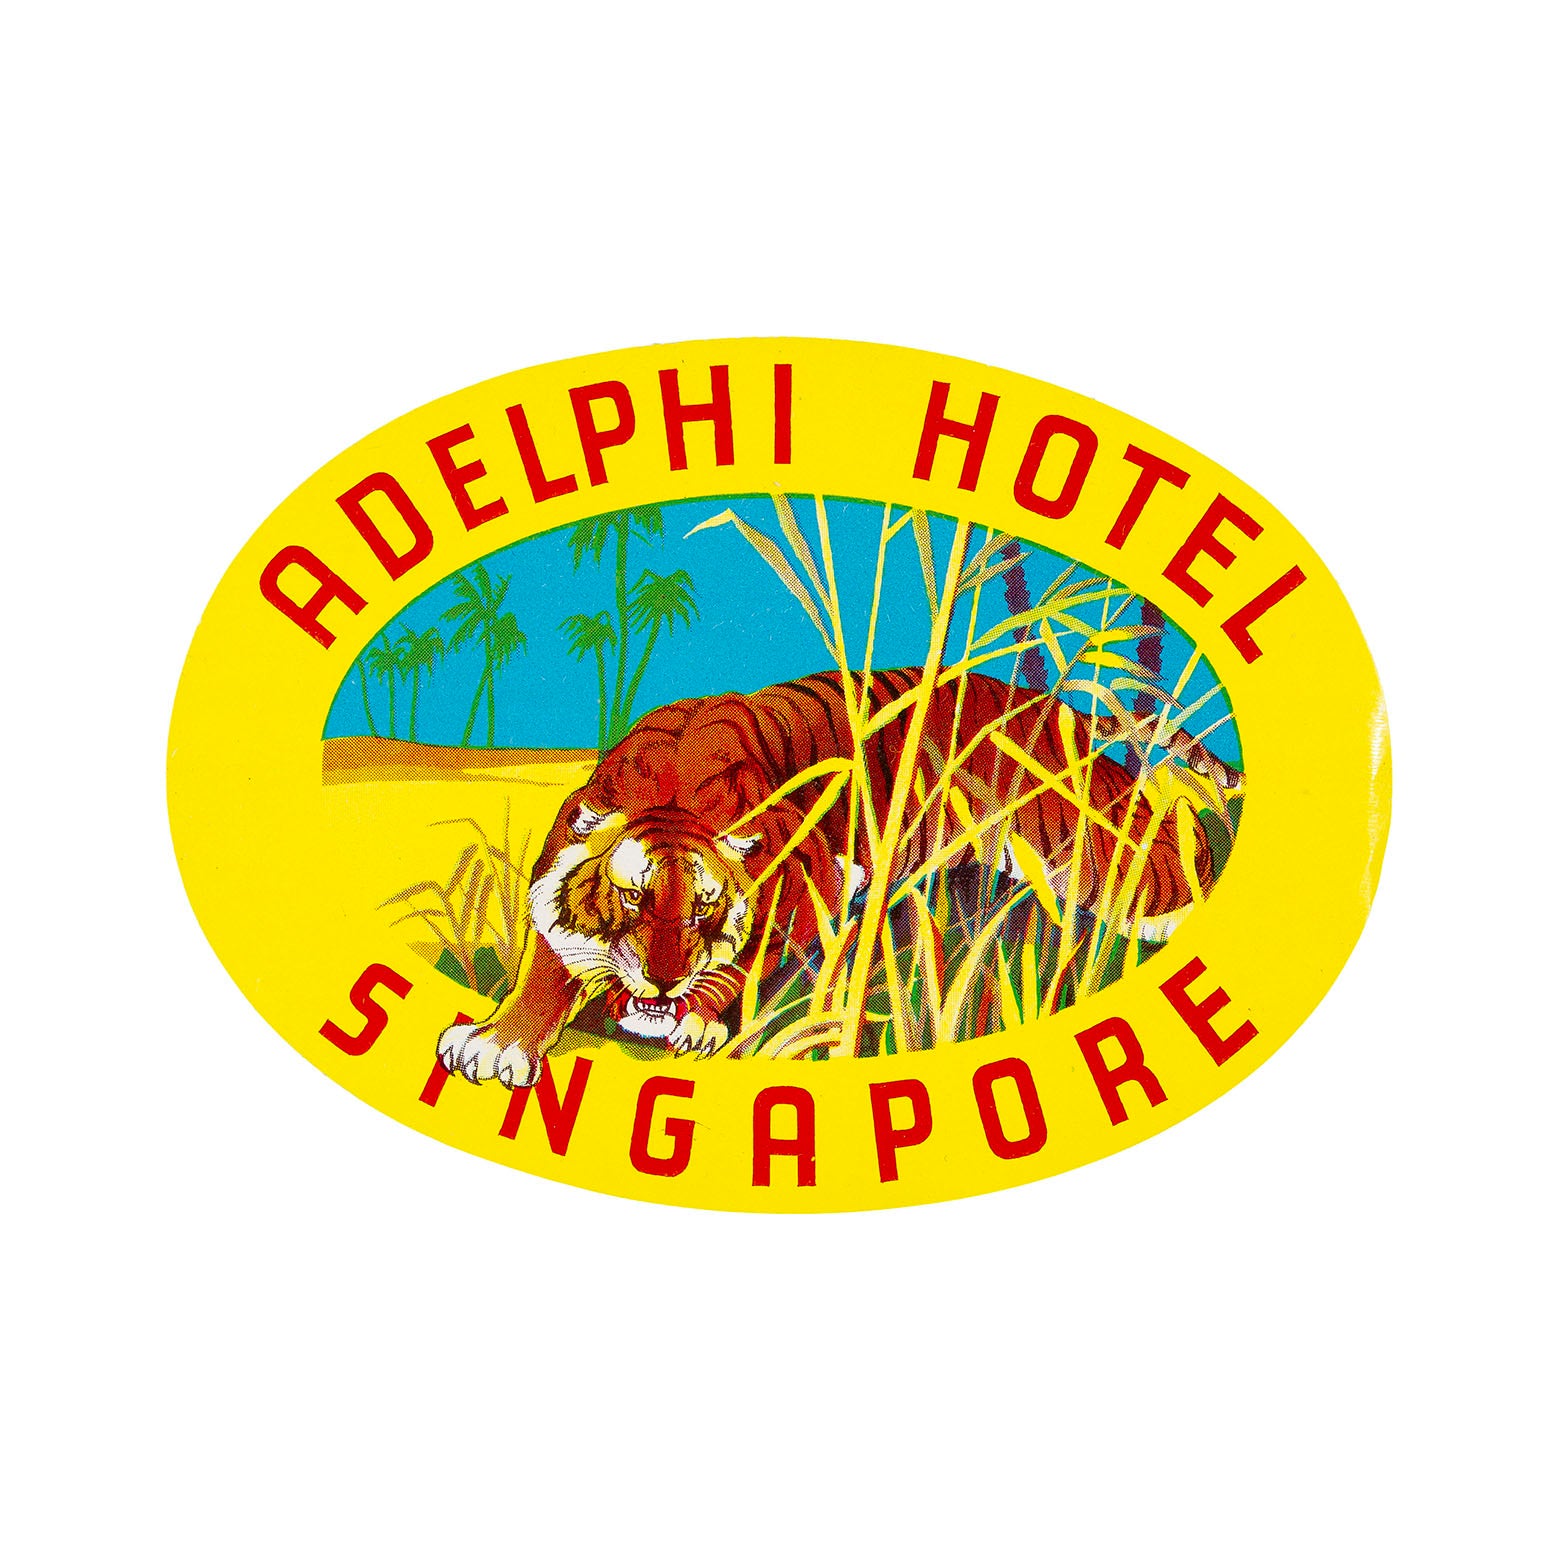 Adelphi Hotel, Singapore (luggage label)